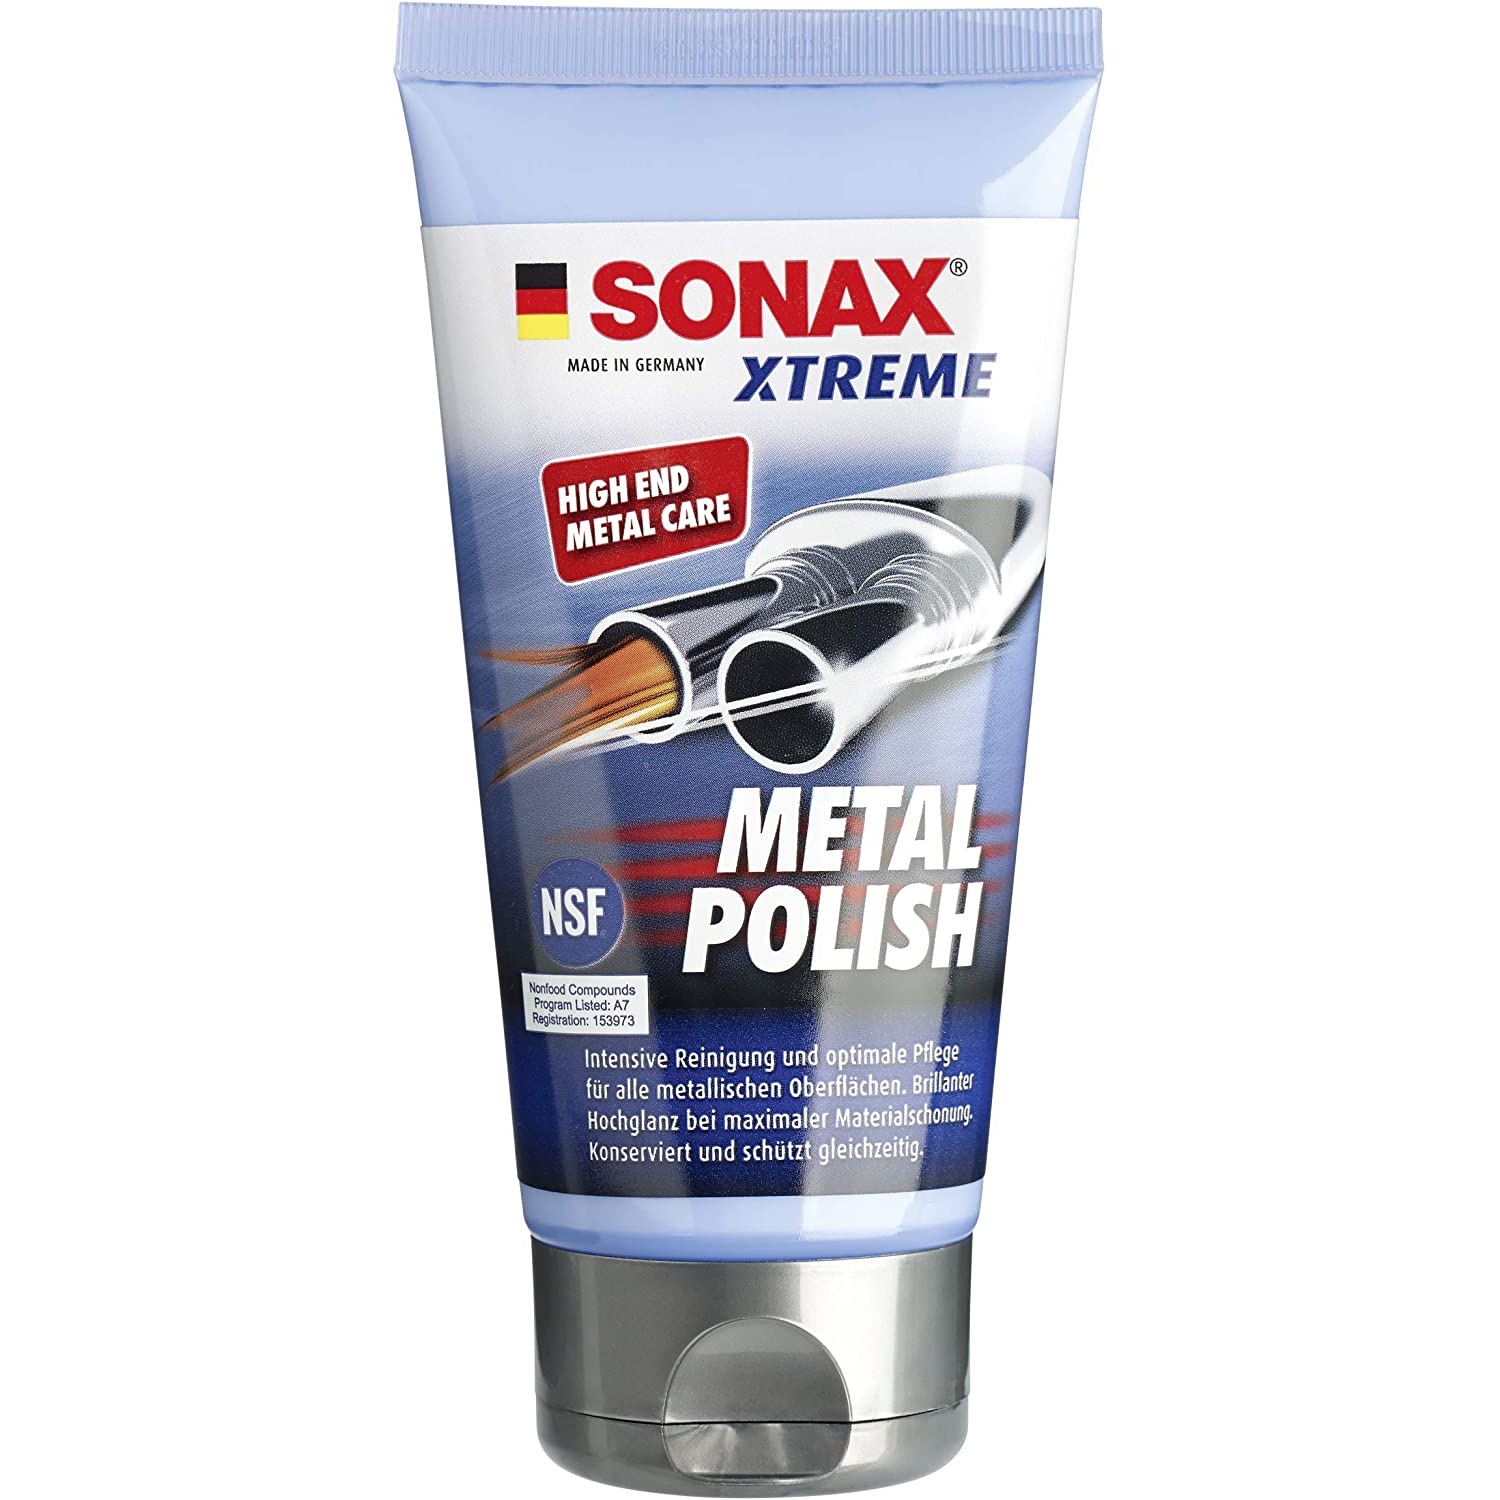 Kem đánh bóng kim loại chuyên dụng Metal Polish Sonax 204100 150ml - Tăng độ sáng bóng, tẩy sạch rỉ sét, vết ố màu, không làm xước, bảo vệ ảnh hưởng của thời tiết